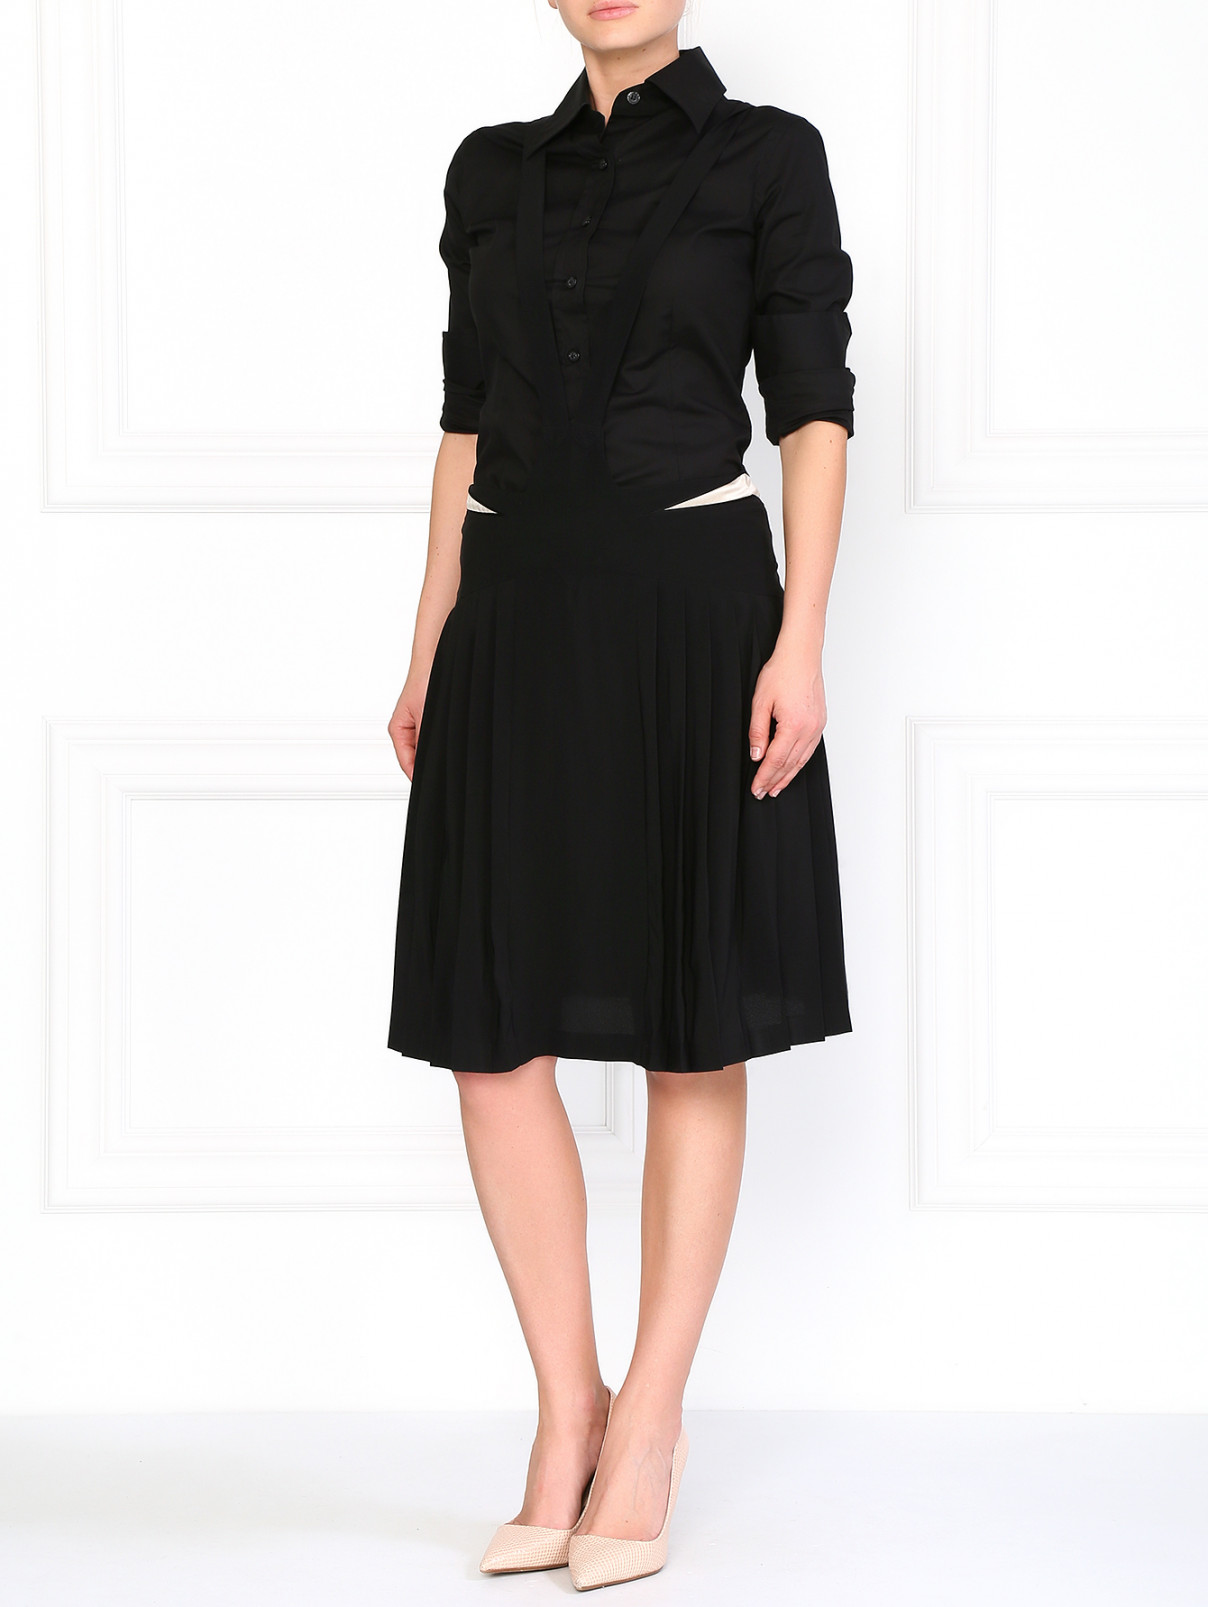 Шелковая юбка с декоративными подтяжками Etro  –  Модель Общий вид  – Цвет:  Черный